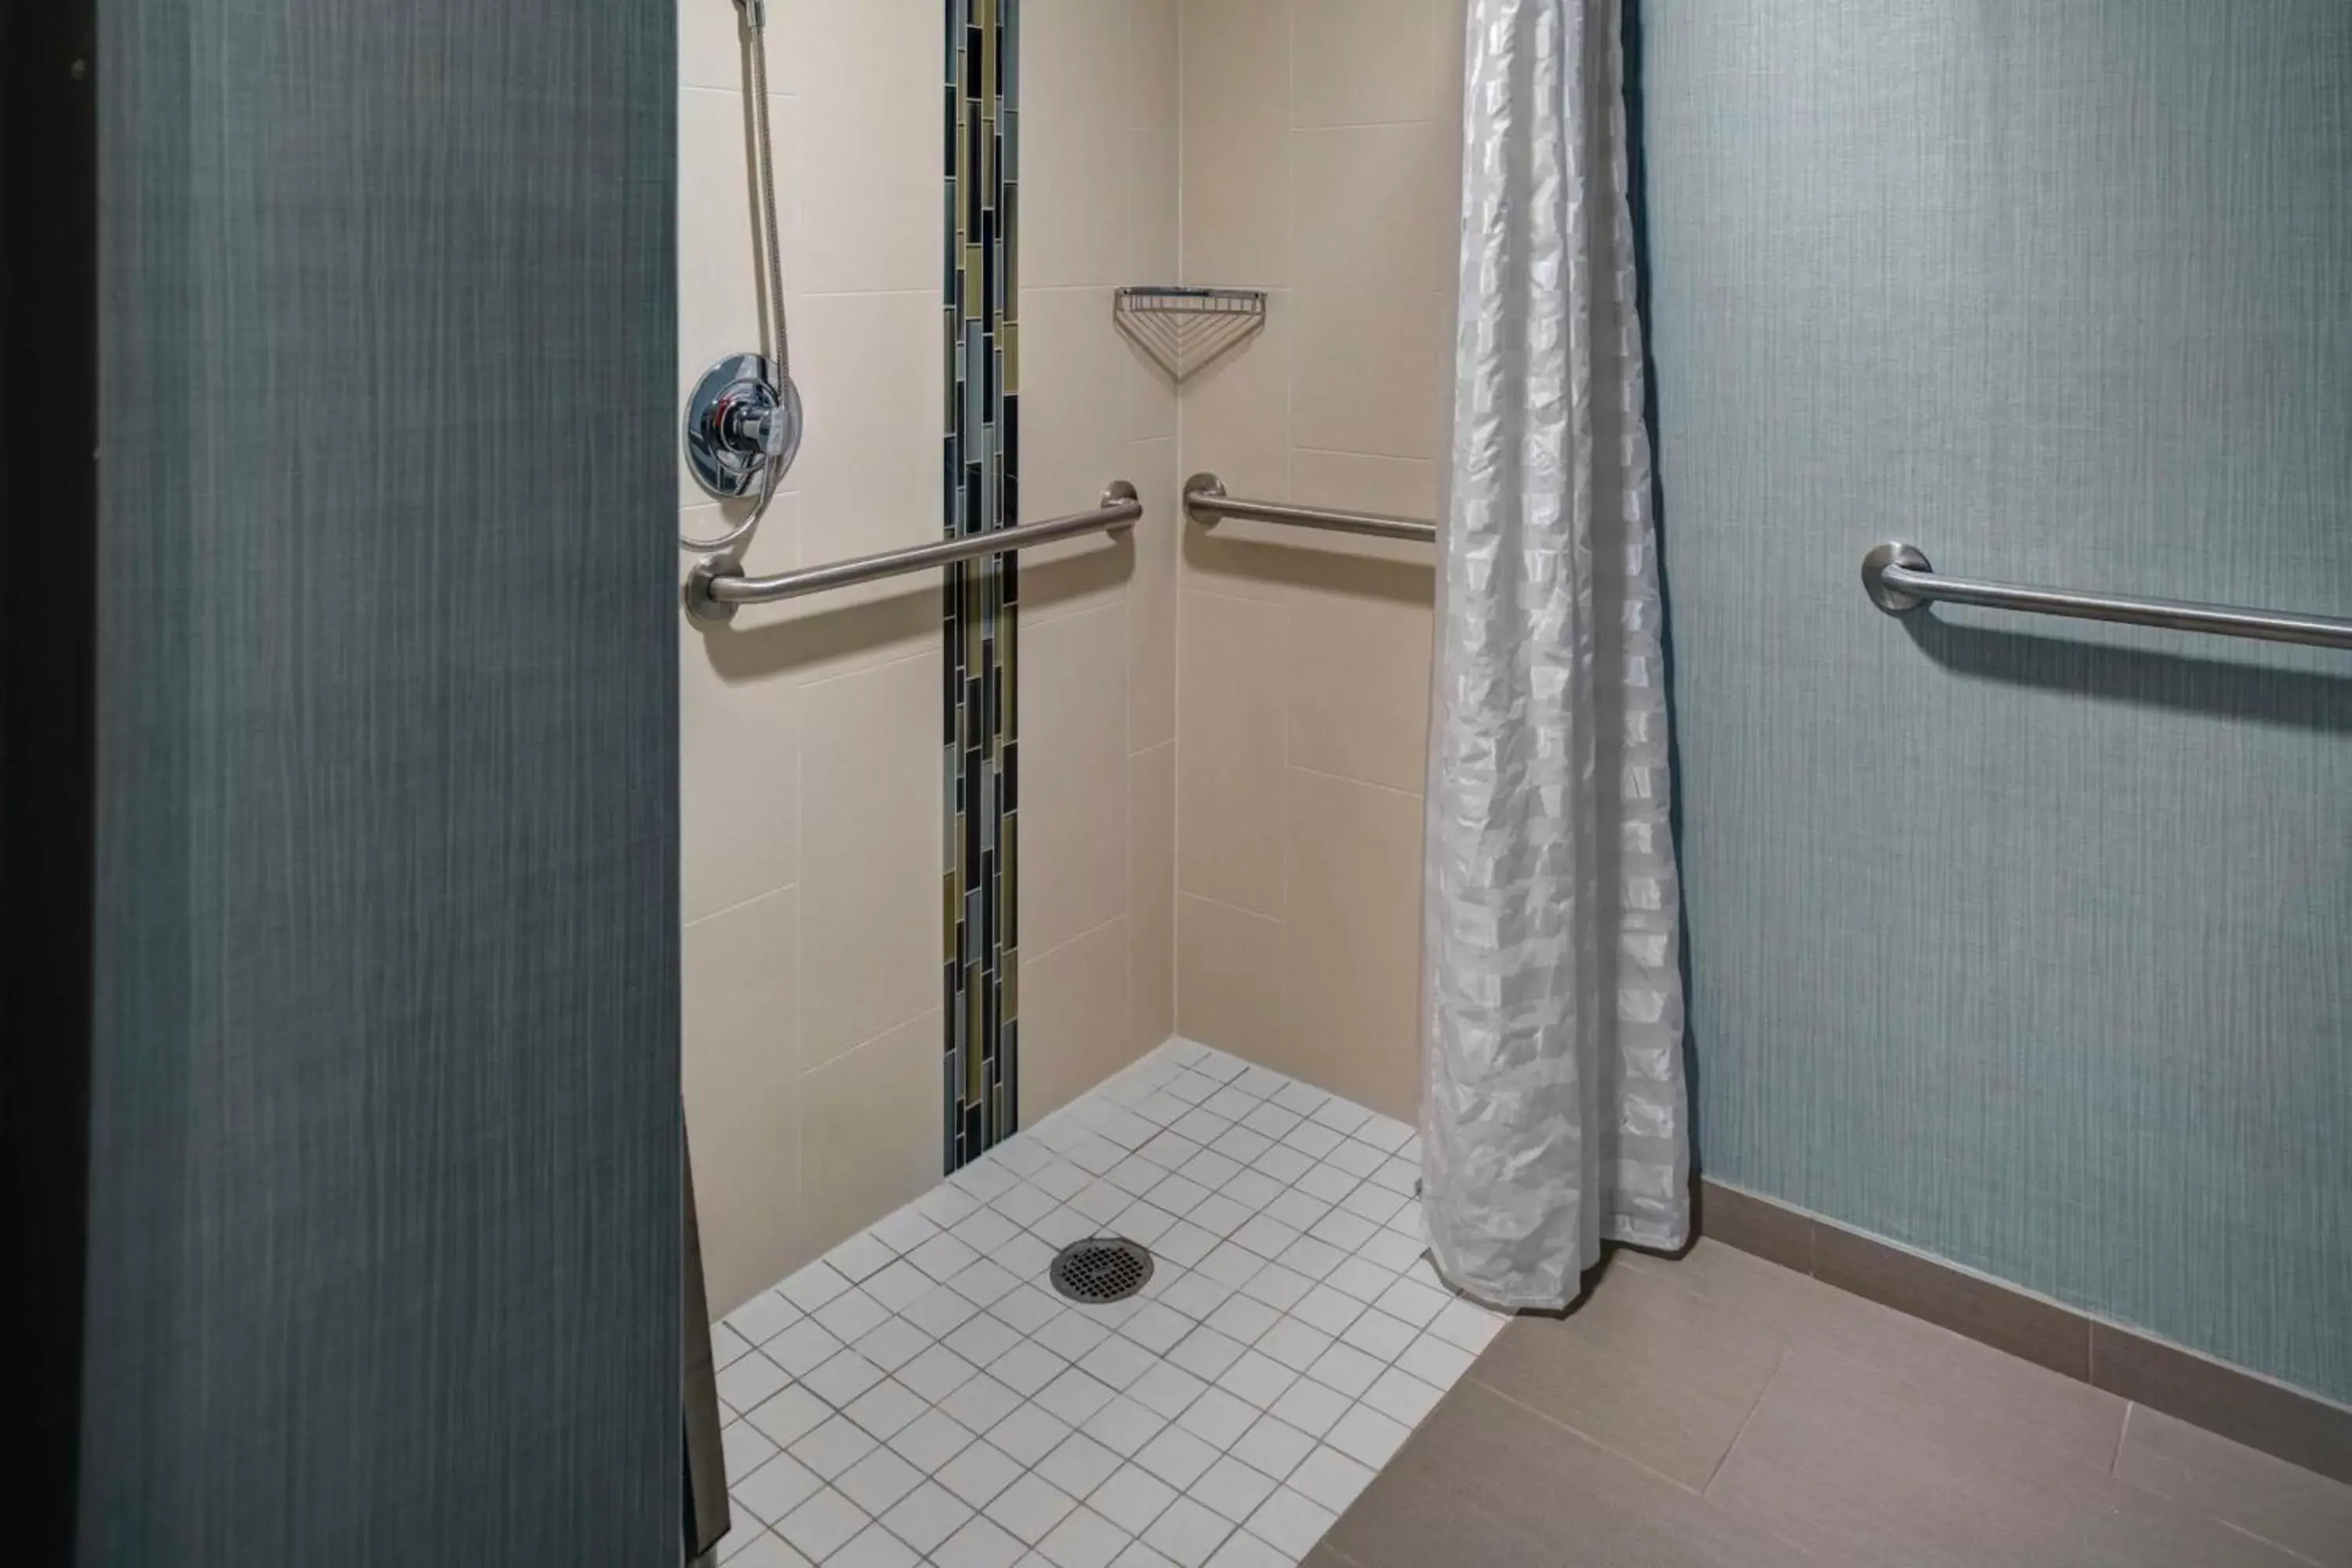 Bathroom in Hyatt Place - Secaucus